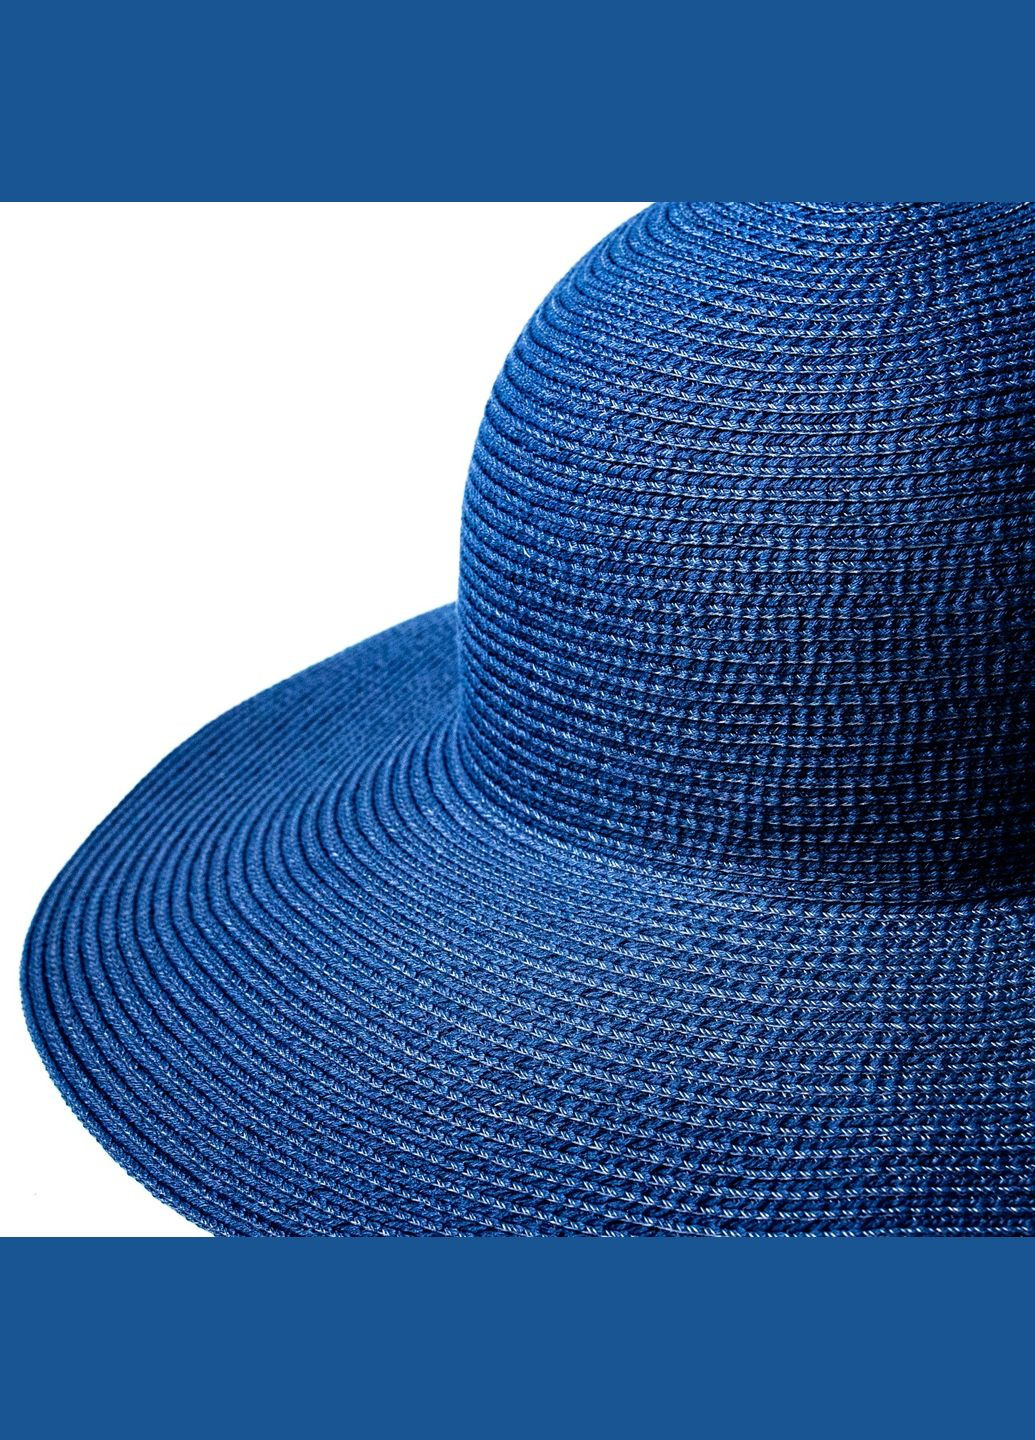 Шляпа слауч женская синяя САНДИ LuckyLOOK 855-374 (292668918)